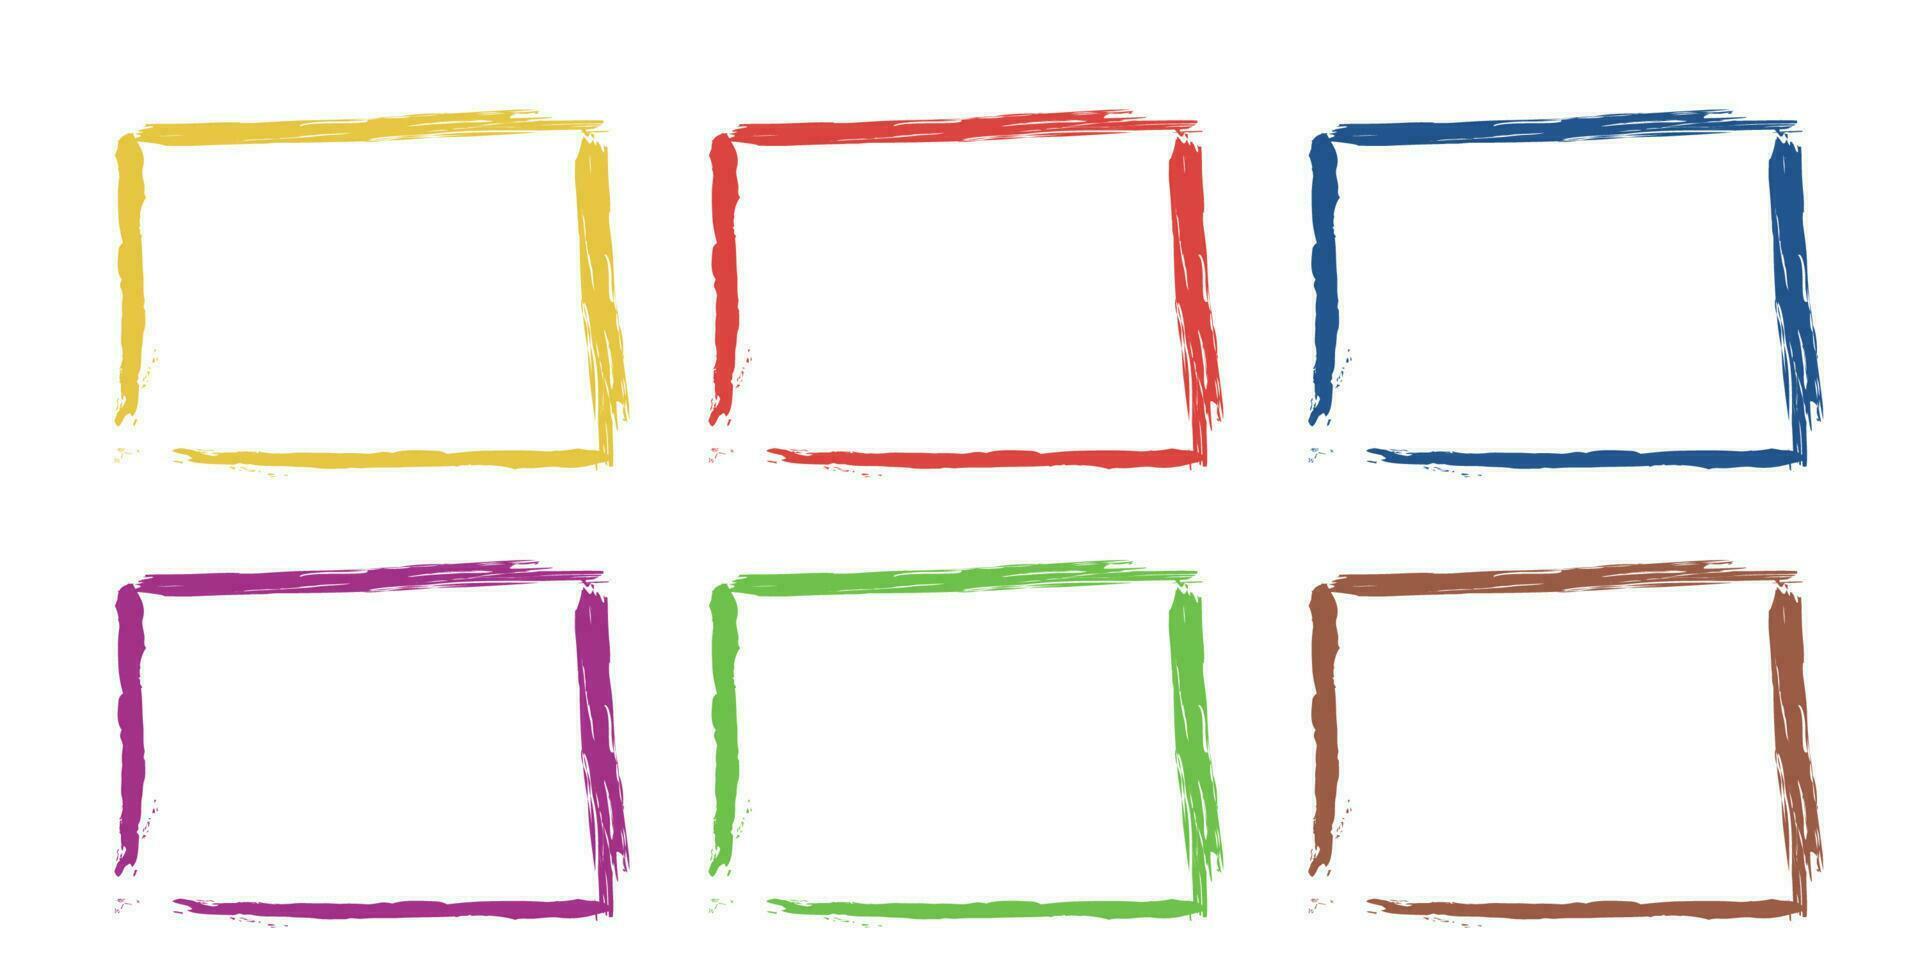 Set of Grunge Frame design in different colors. Vector illustration.